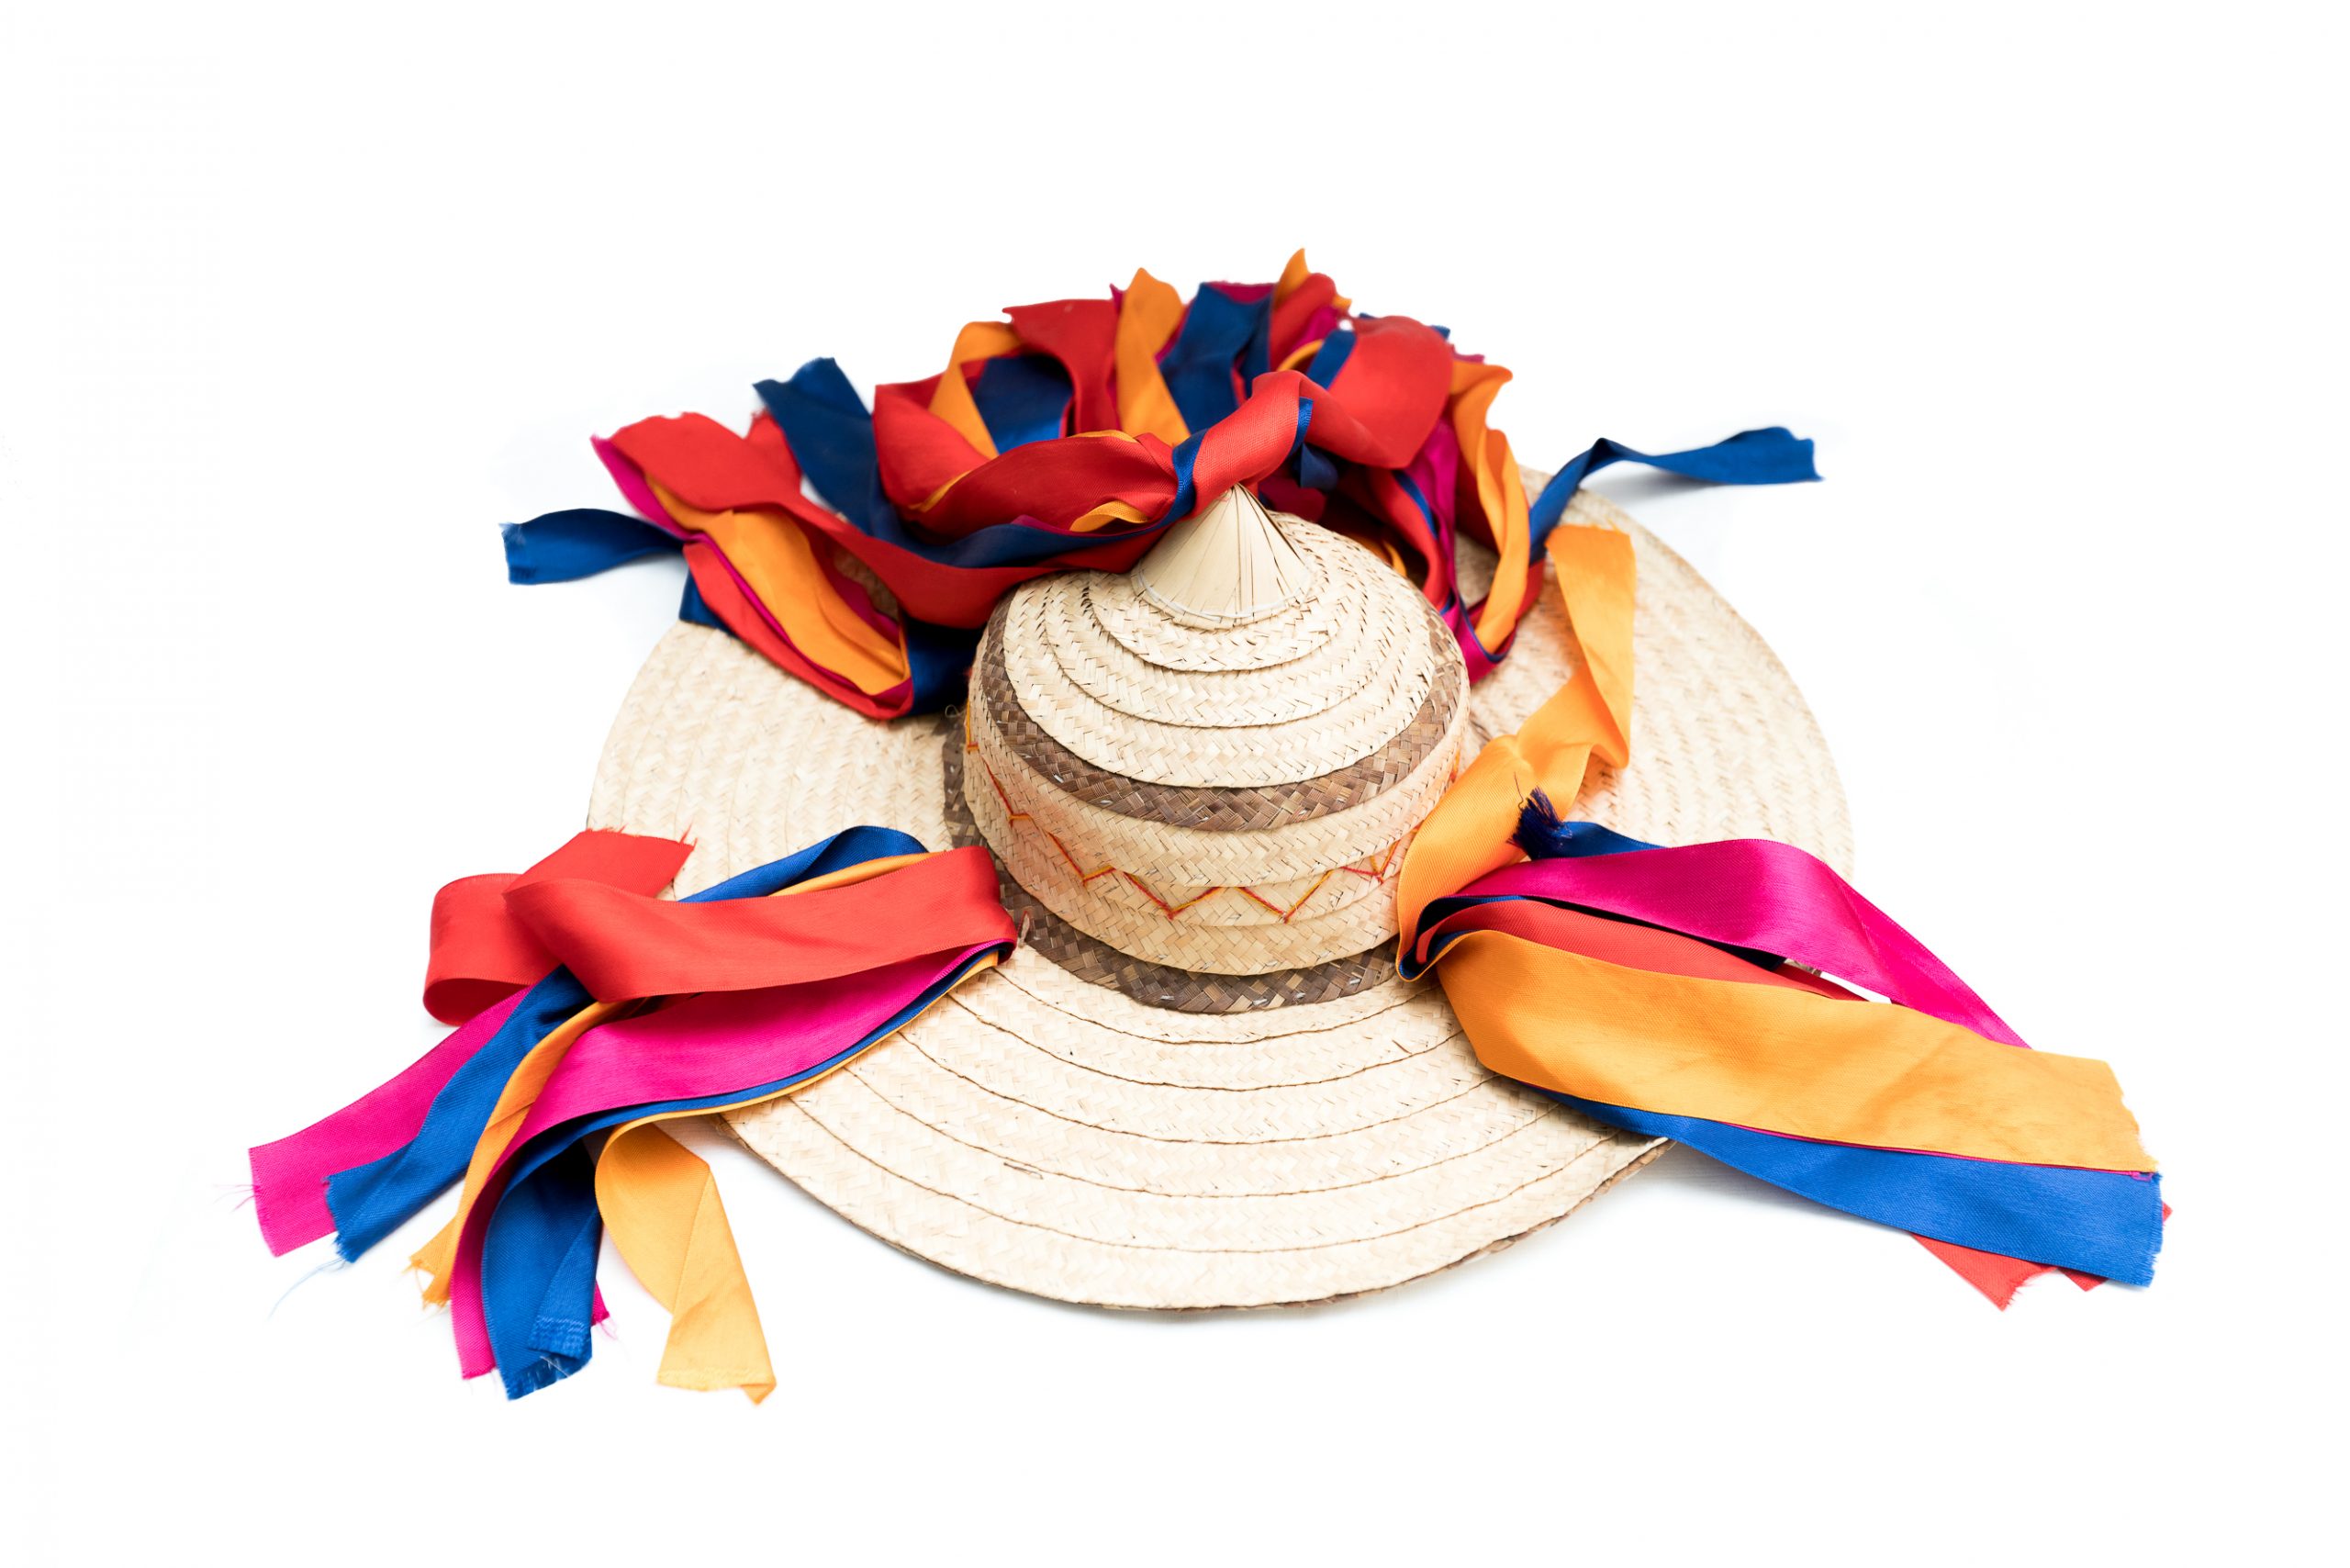 Sombrero tzotzil de palma tejida, cosido a mano. Artesano desconocido. Chiapas. Col. Populart. (Foto: EKV).